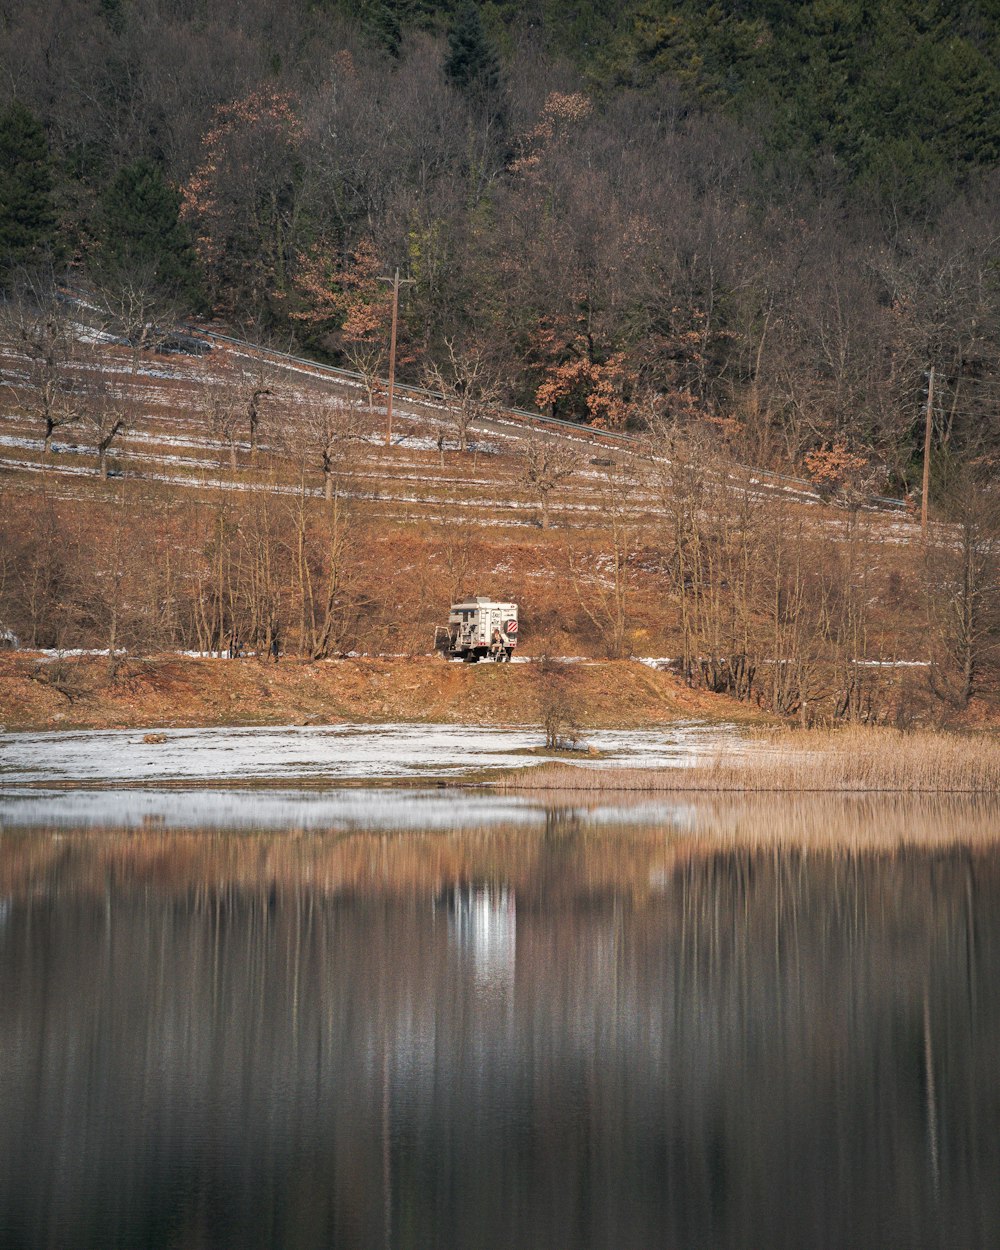 Un camion è parcheggiato sulla riva di un lago